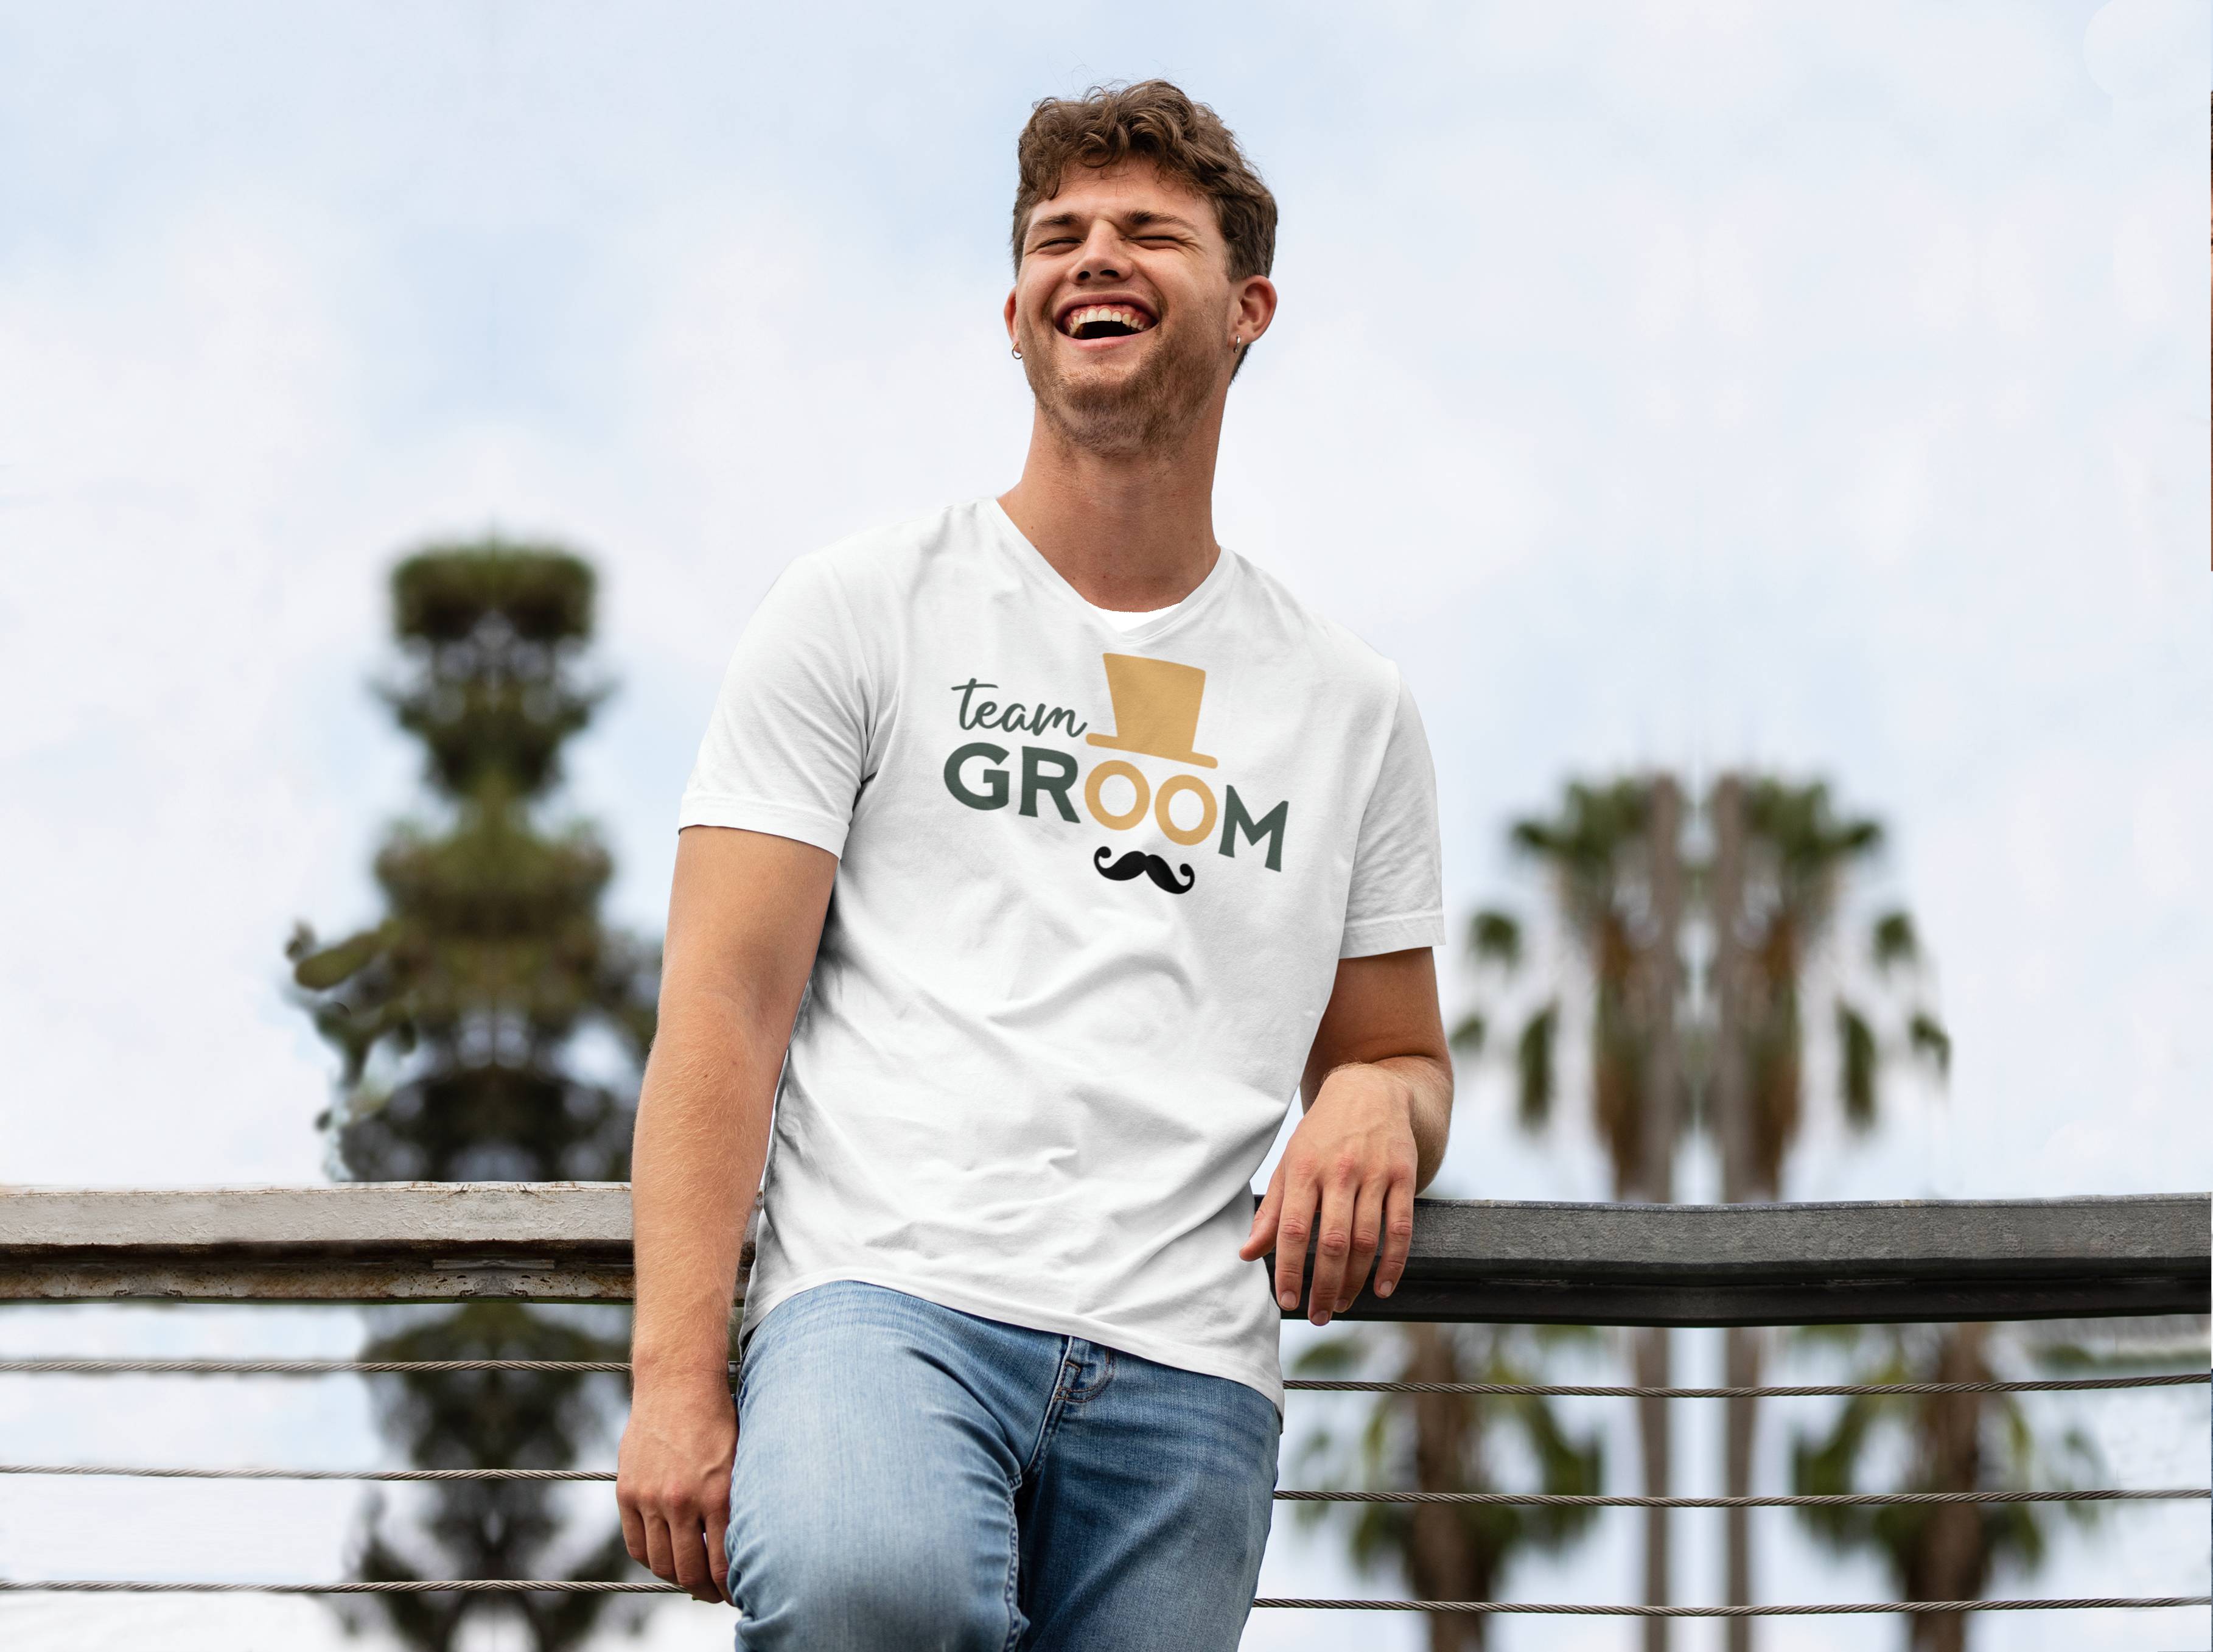 Personal Pánske tričko - Team Groom Farba: biela, Veľkosť - dospelý: M